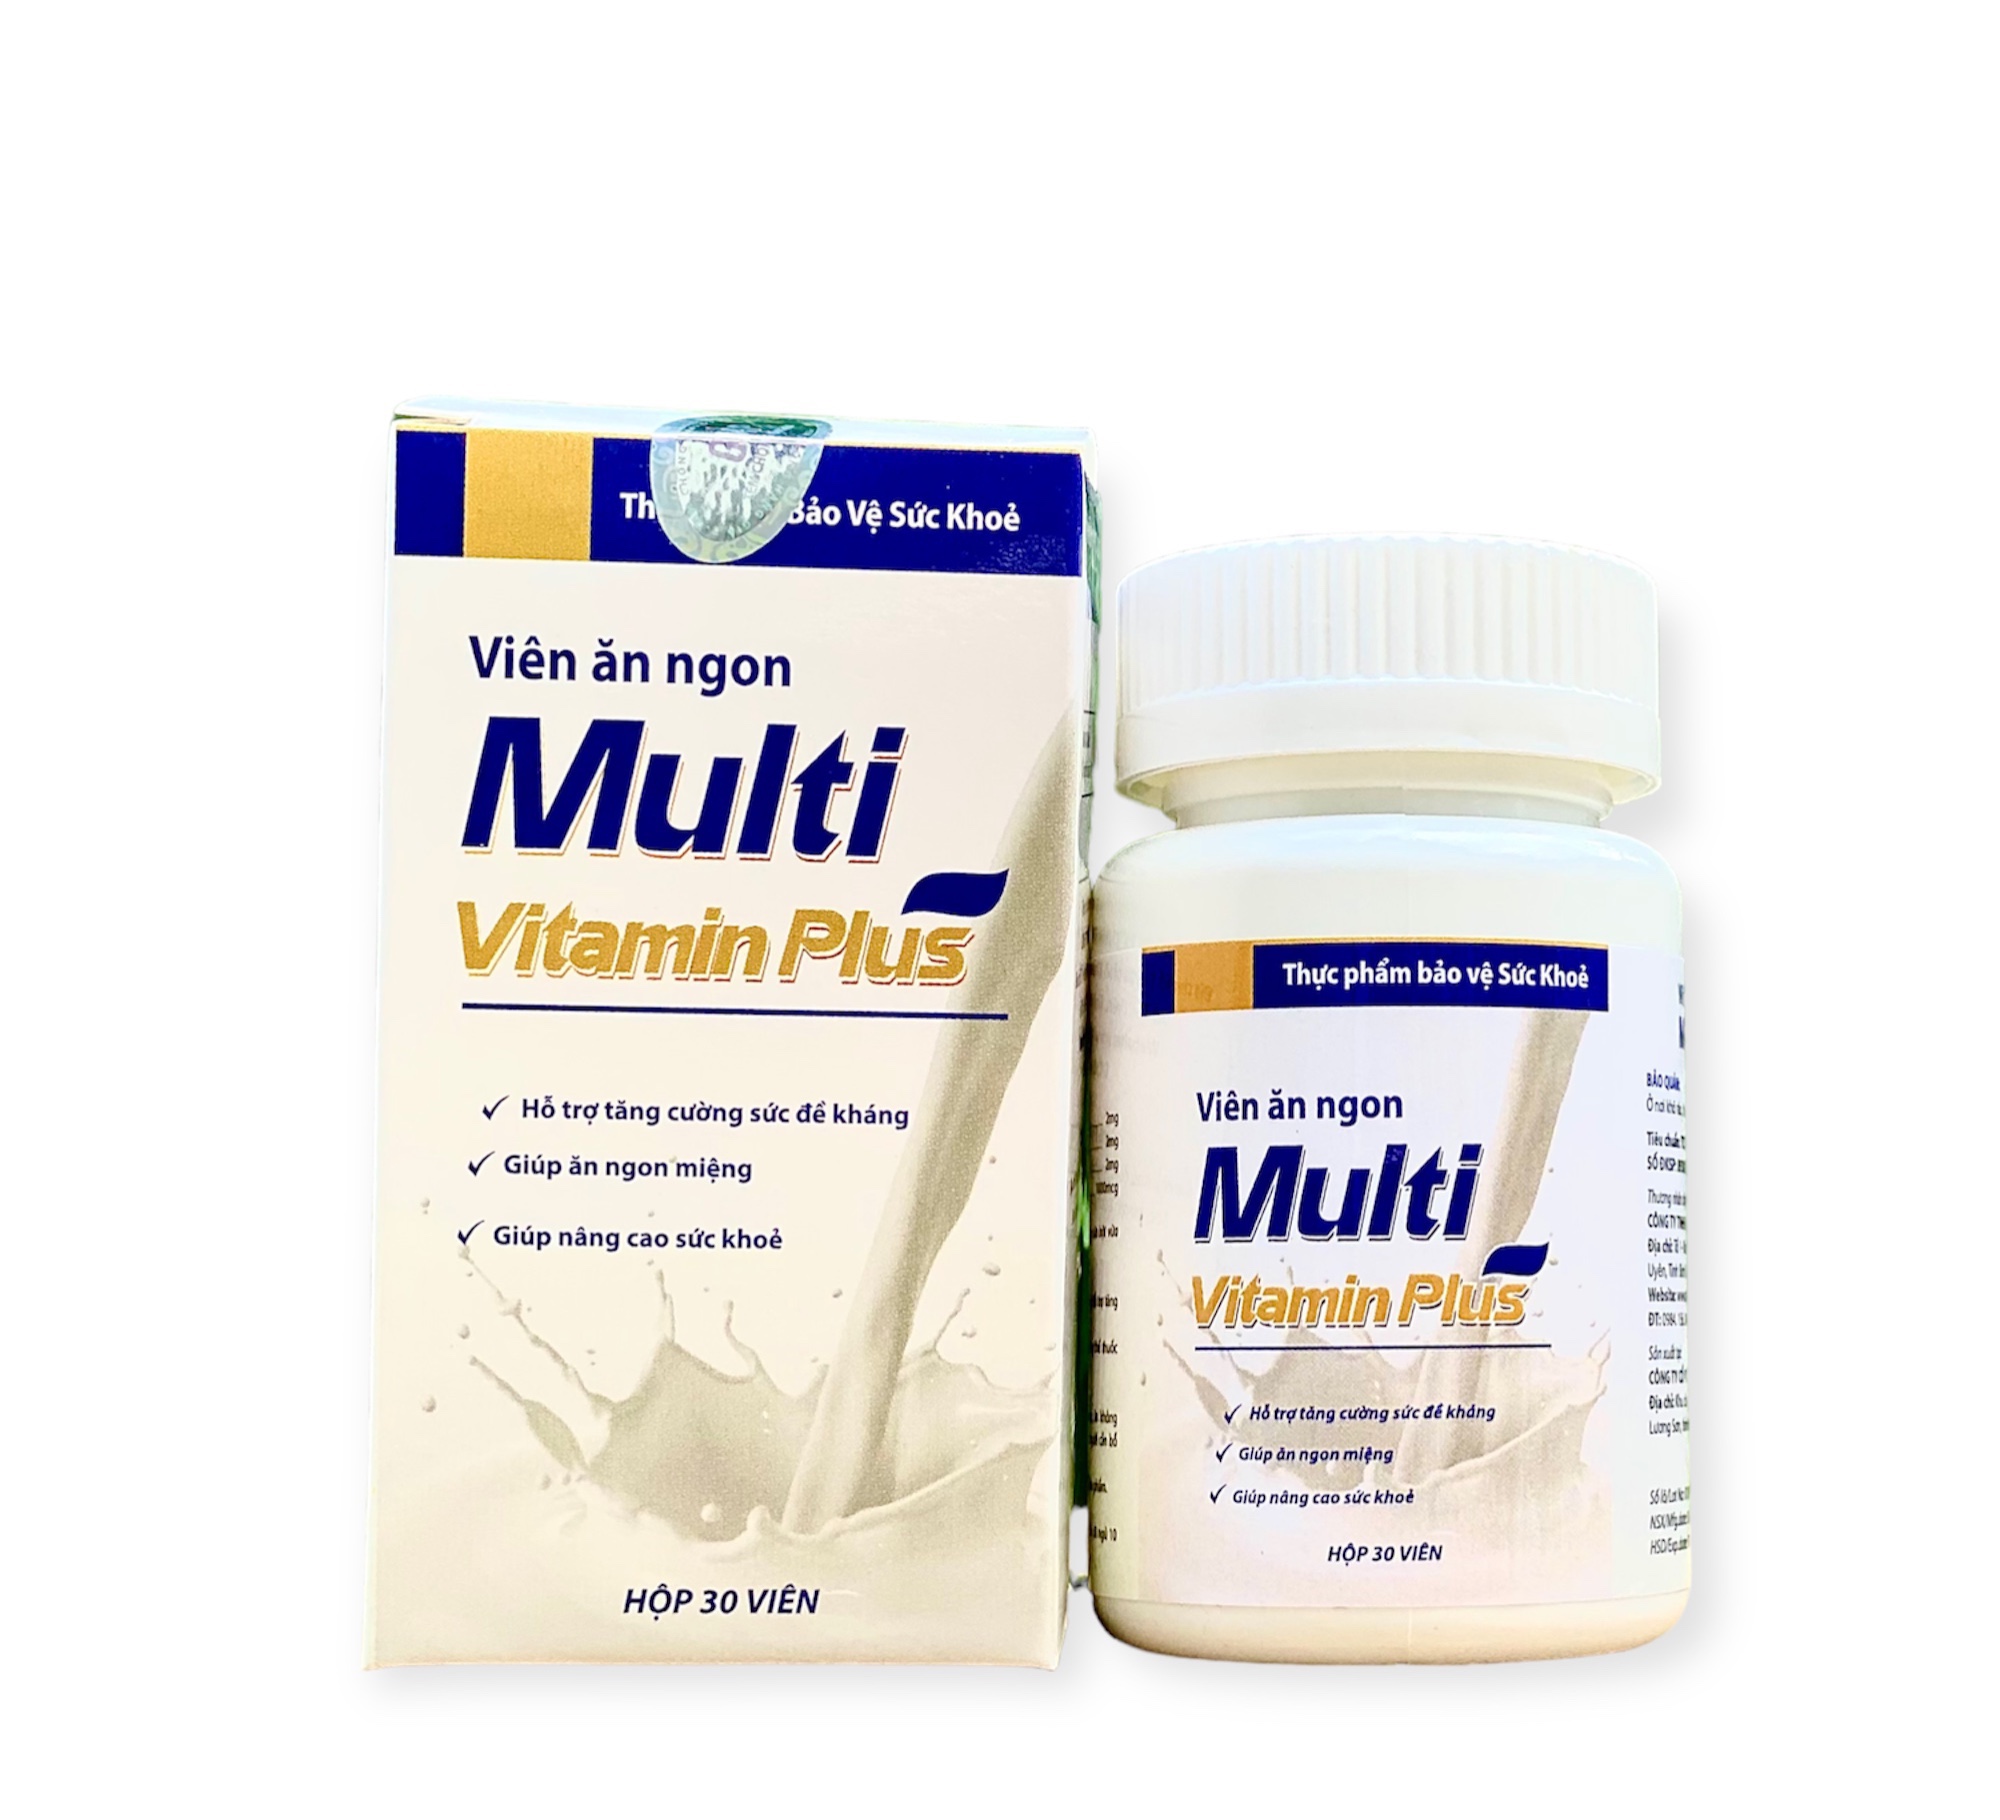 1 Hộp Tăng Cân Multi Vitamin Plus 30 viên Hỗ Trợ Cải Thiện Cân Nặng, Tăng Cường Sức Khỏe, Tăng Cân Cho Người Gầy